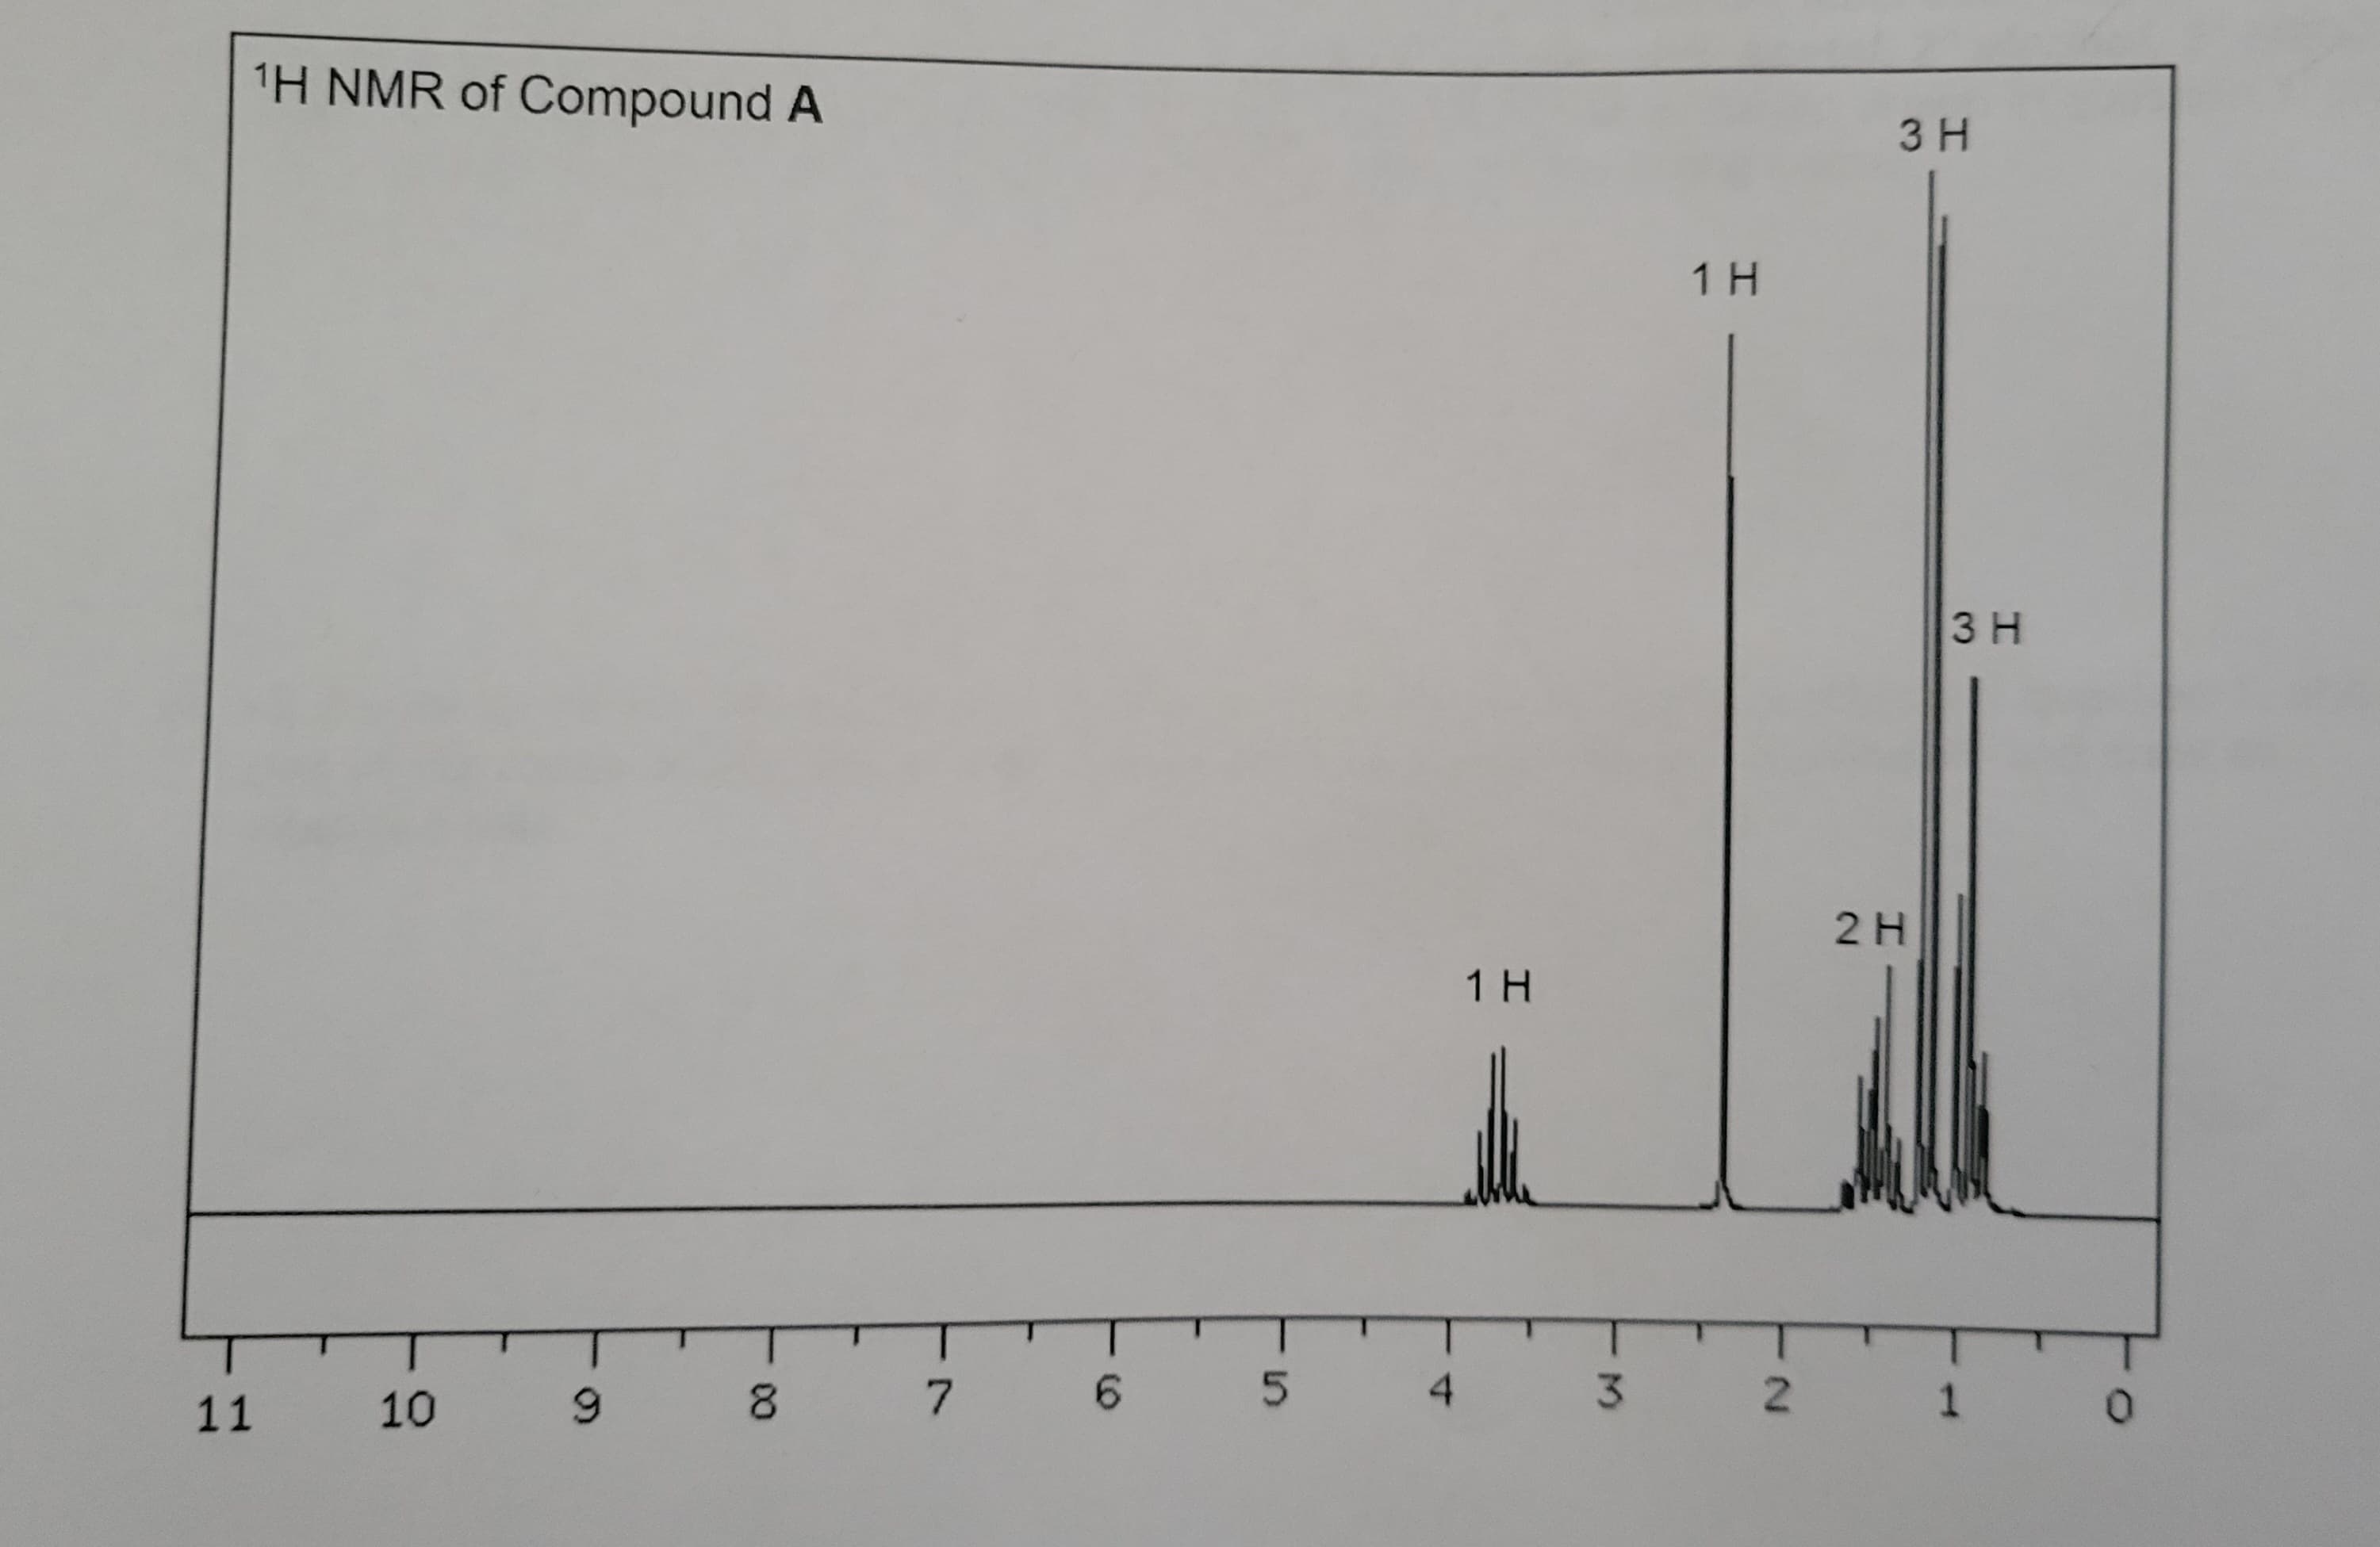 ¹H NMR of Compound A
10 9
11 10
1Н
1 Н
3H
2 Н
ЗН
8 7 6 5 4 3 2 1
0